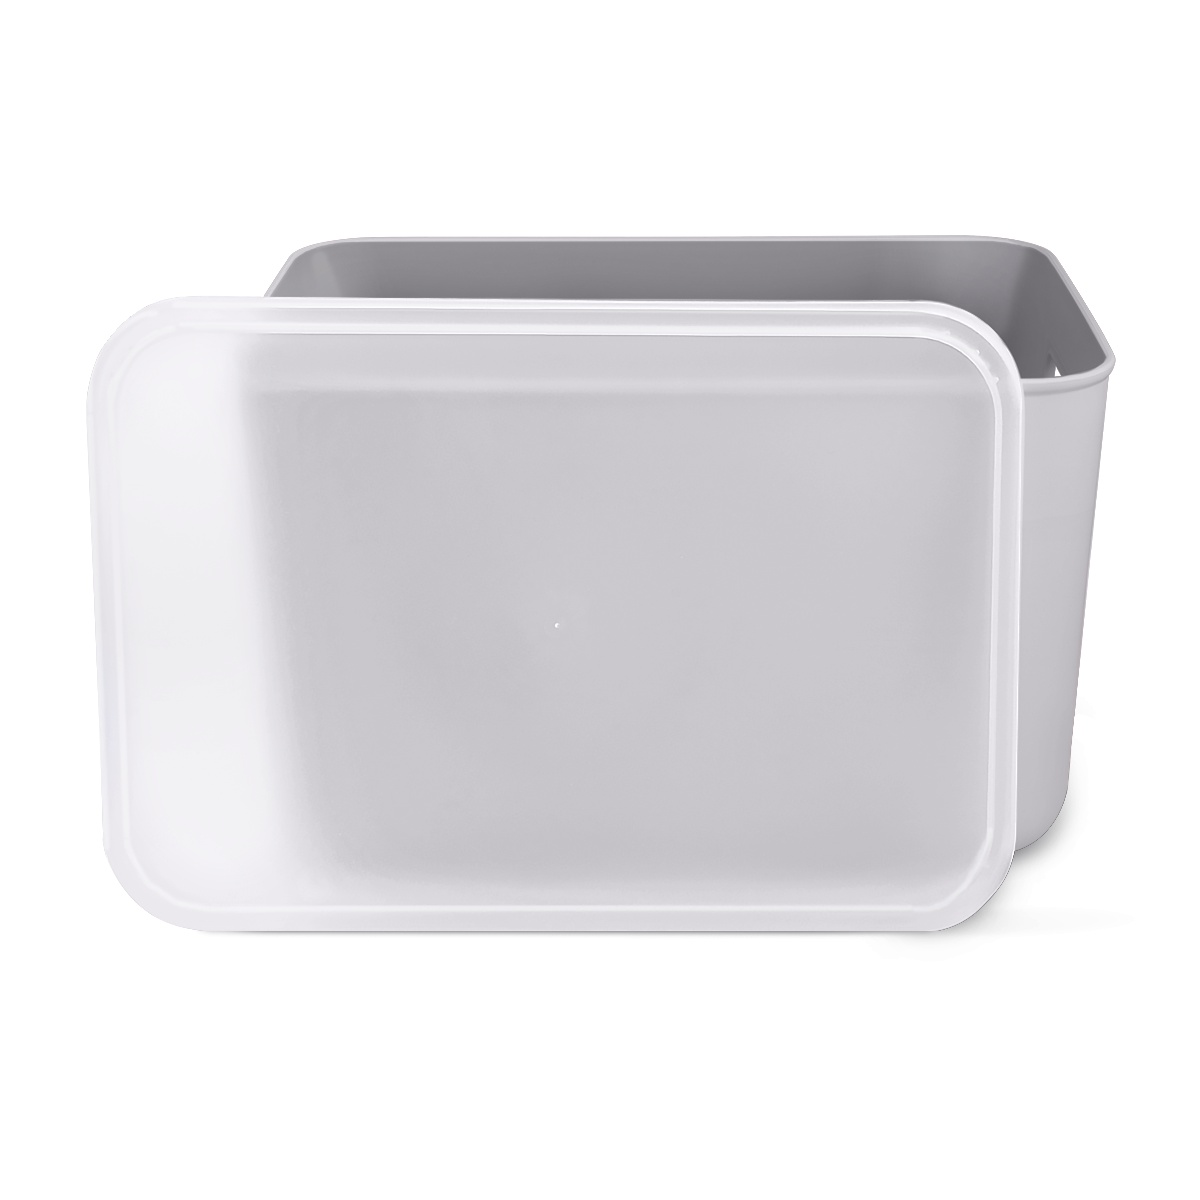 Ящик для хранения MVM пластиковый серый 160x180x257 FH-11 S GRAY